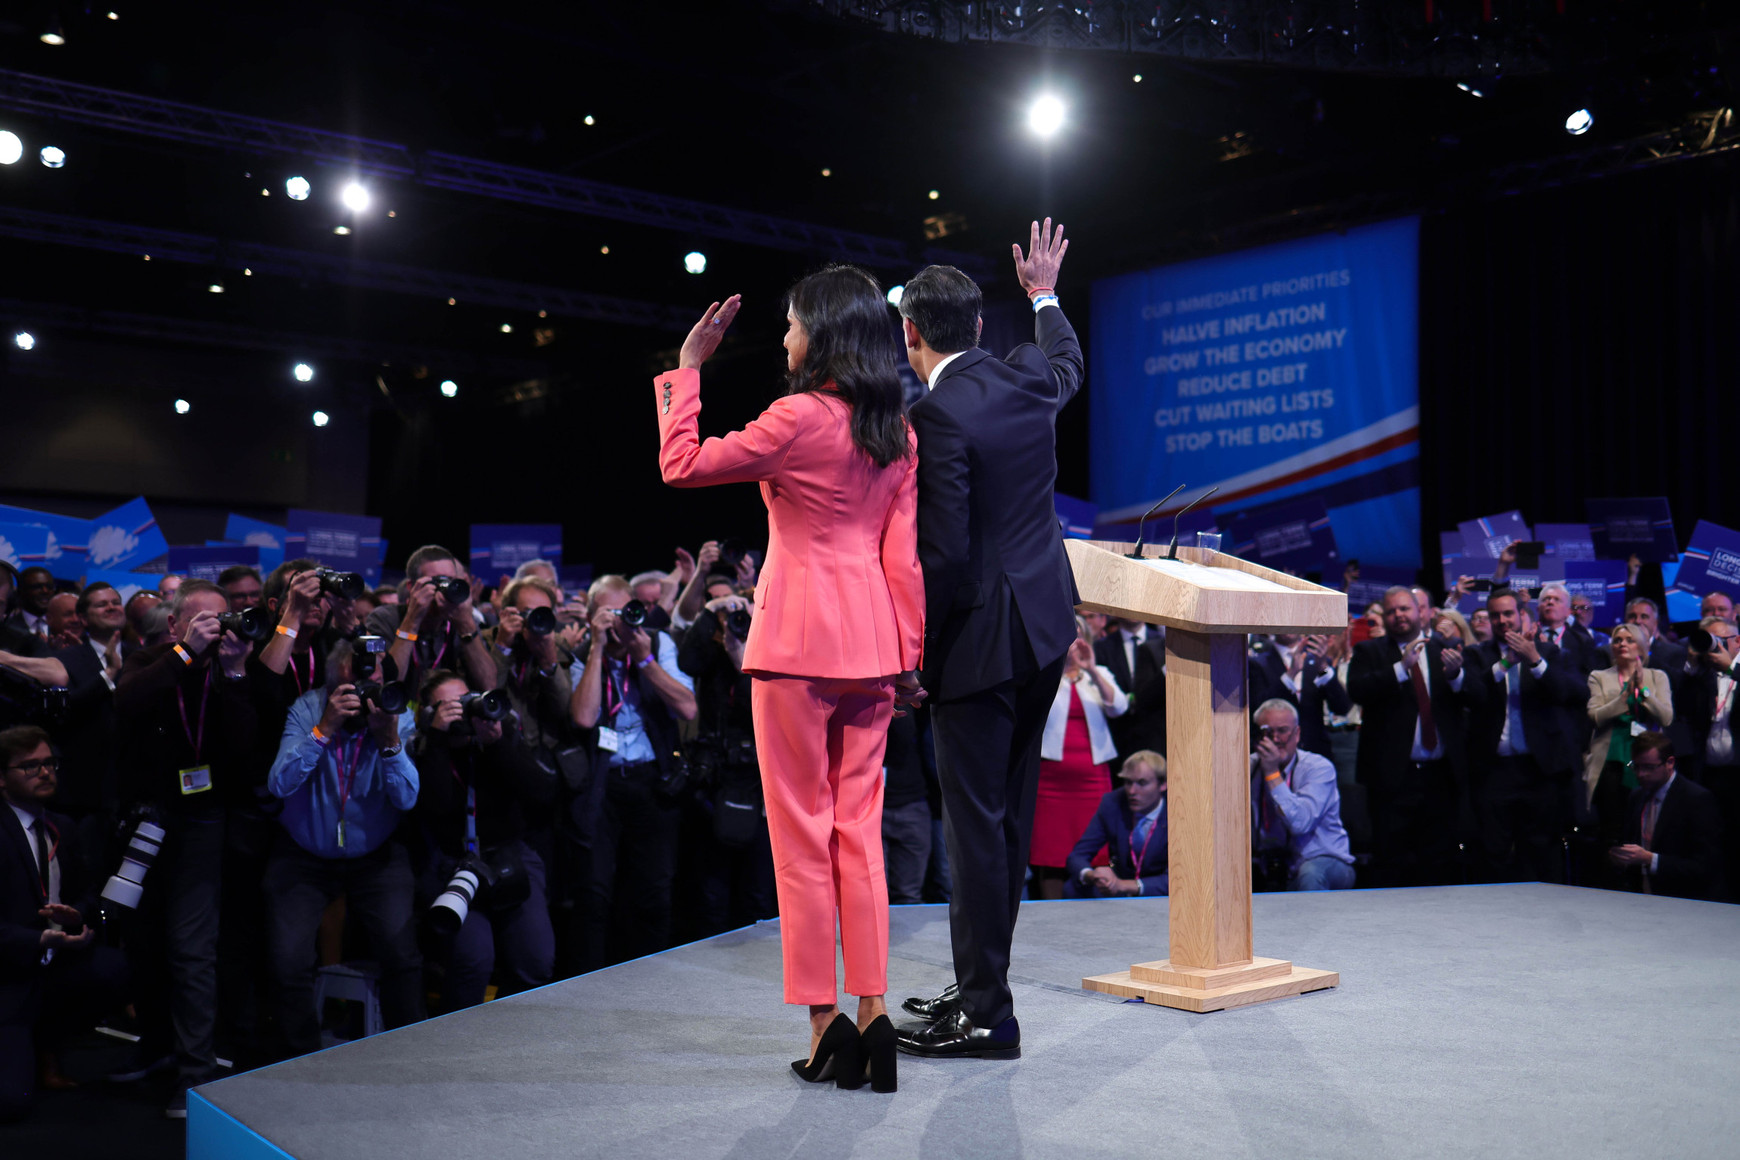 Crédit photo : The Conservative party Au Royaume-Uni, les Tories aux portes d'un échec historique - Alma-Pierre Bonnet